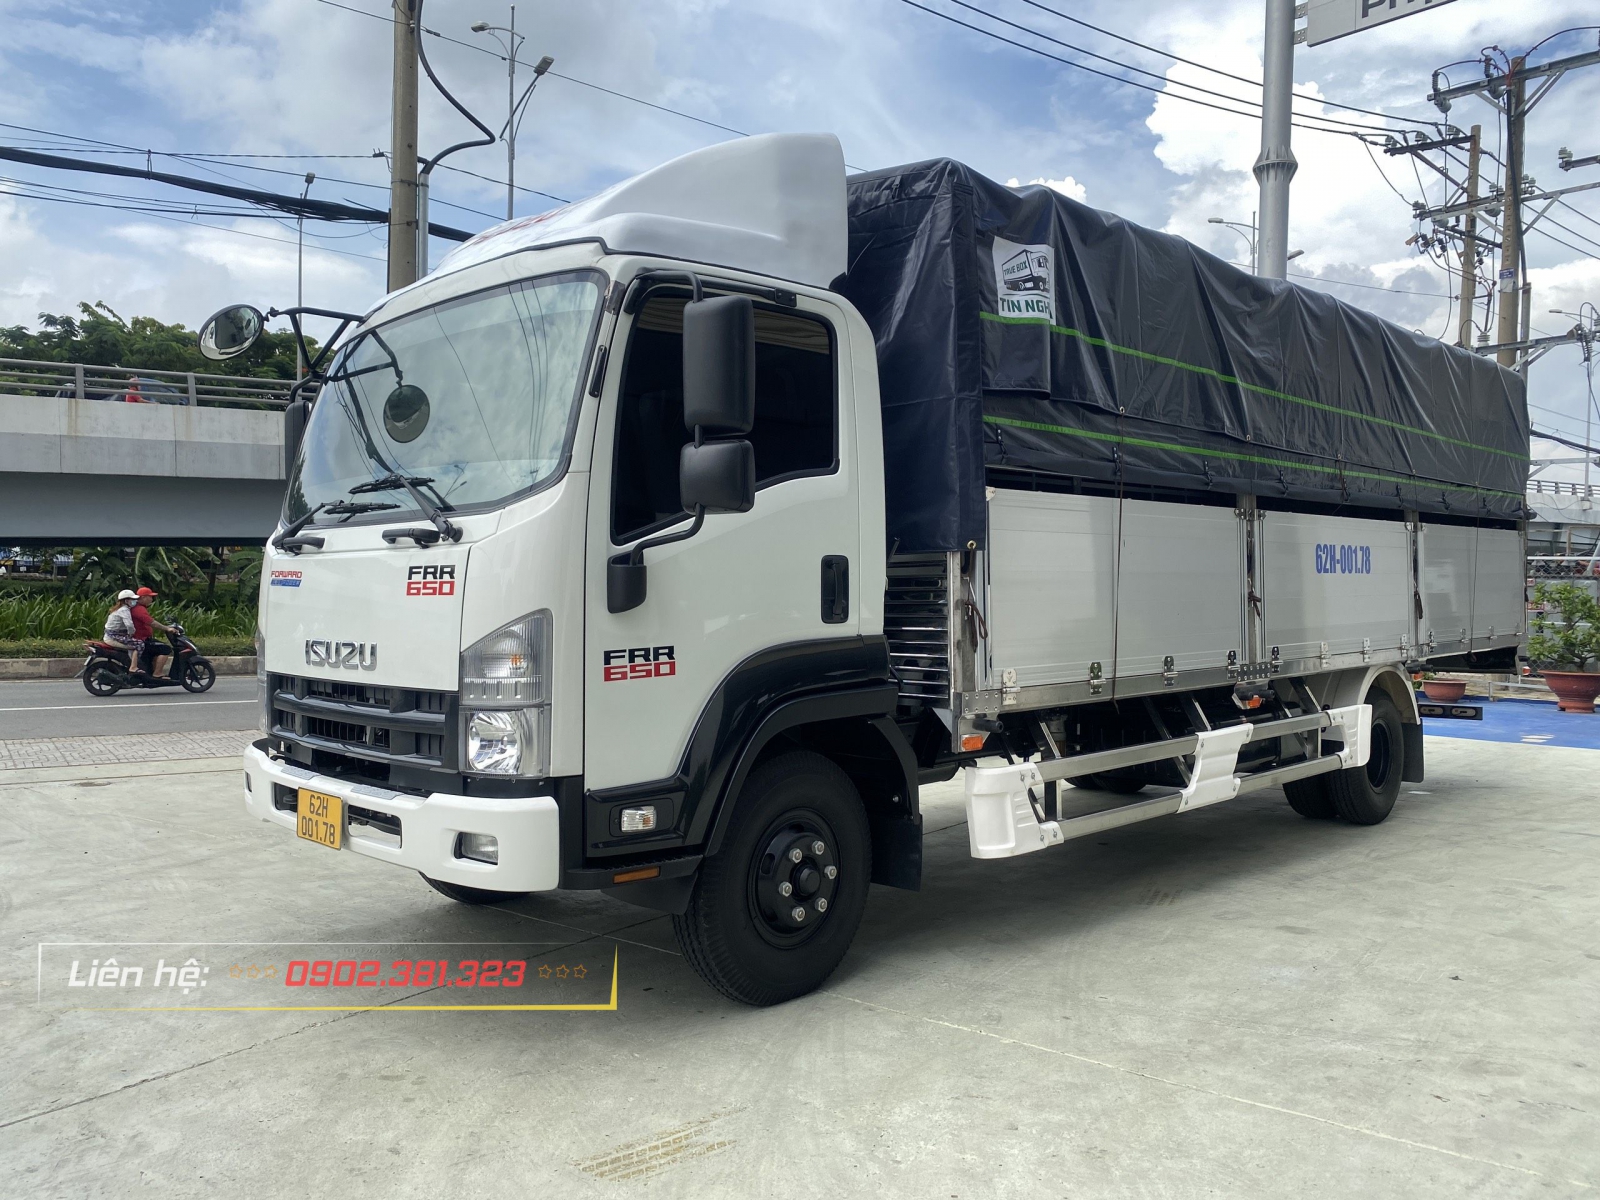 Isuzu An Lạc là đại lý chuyên phân phối và cung cấp dòng xe tải Isuzu Việt Nam. Chúng tôi gửi đến quý khách hàng Bảng Giá xe tải Isuzu 7 tấn FRR90LE4 2021 Mới nhất. Liên hệ ngay: 0902.381.323 Gặp Hóa để mua xe.